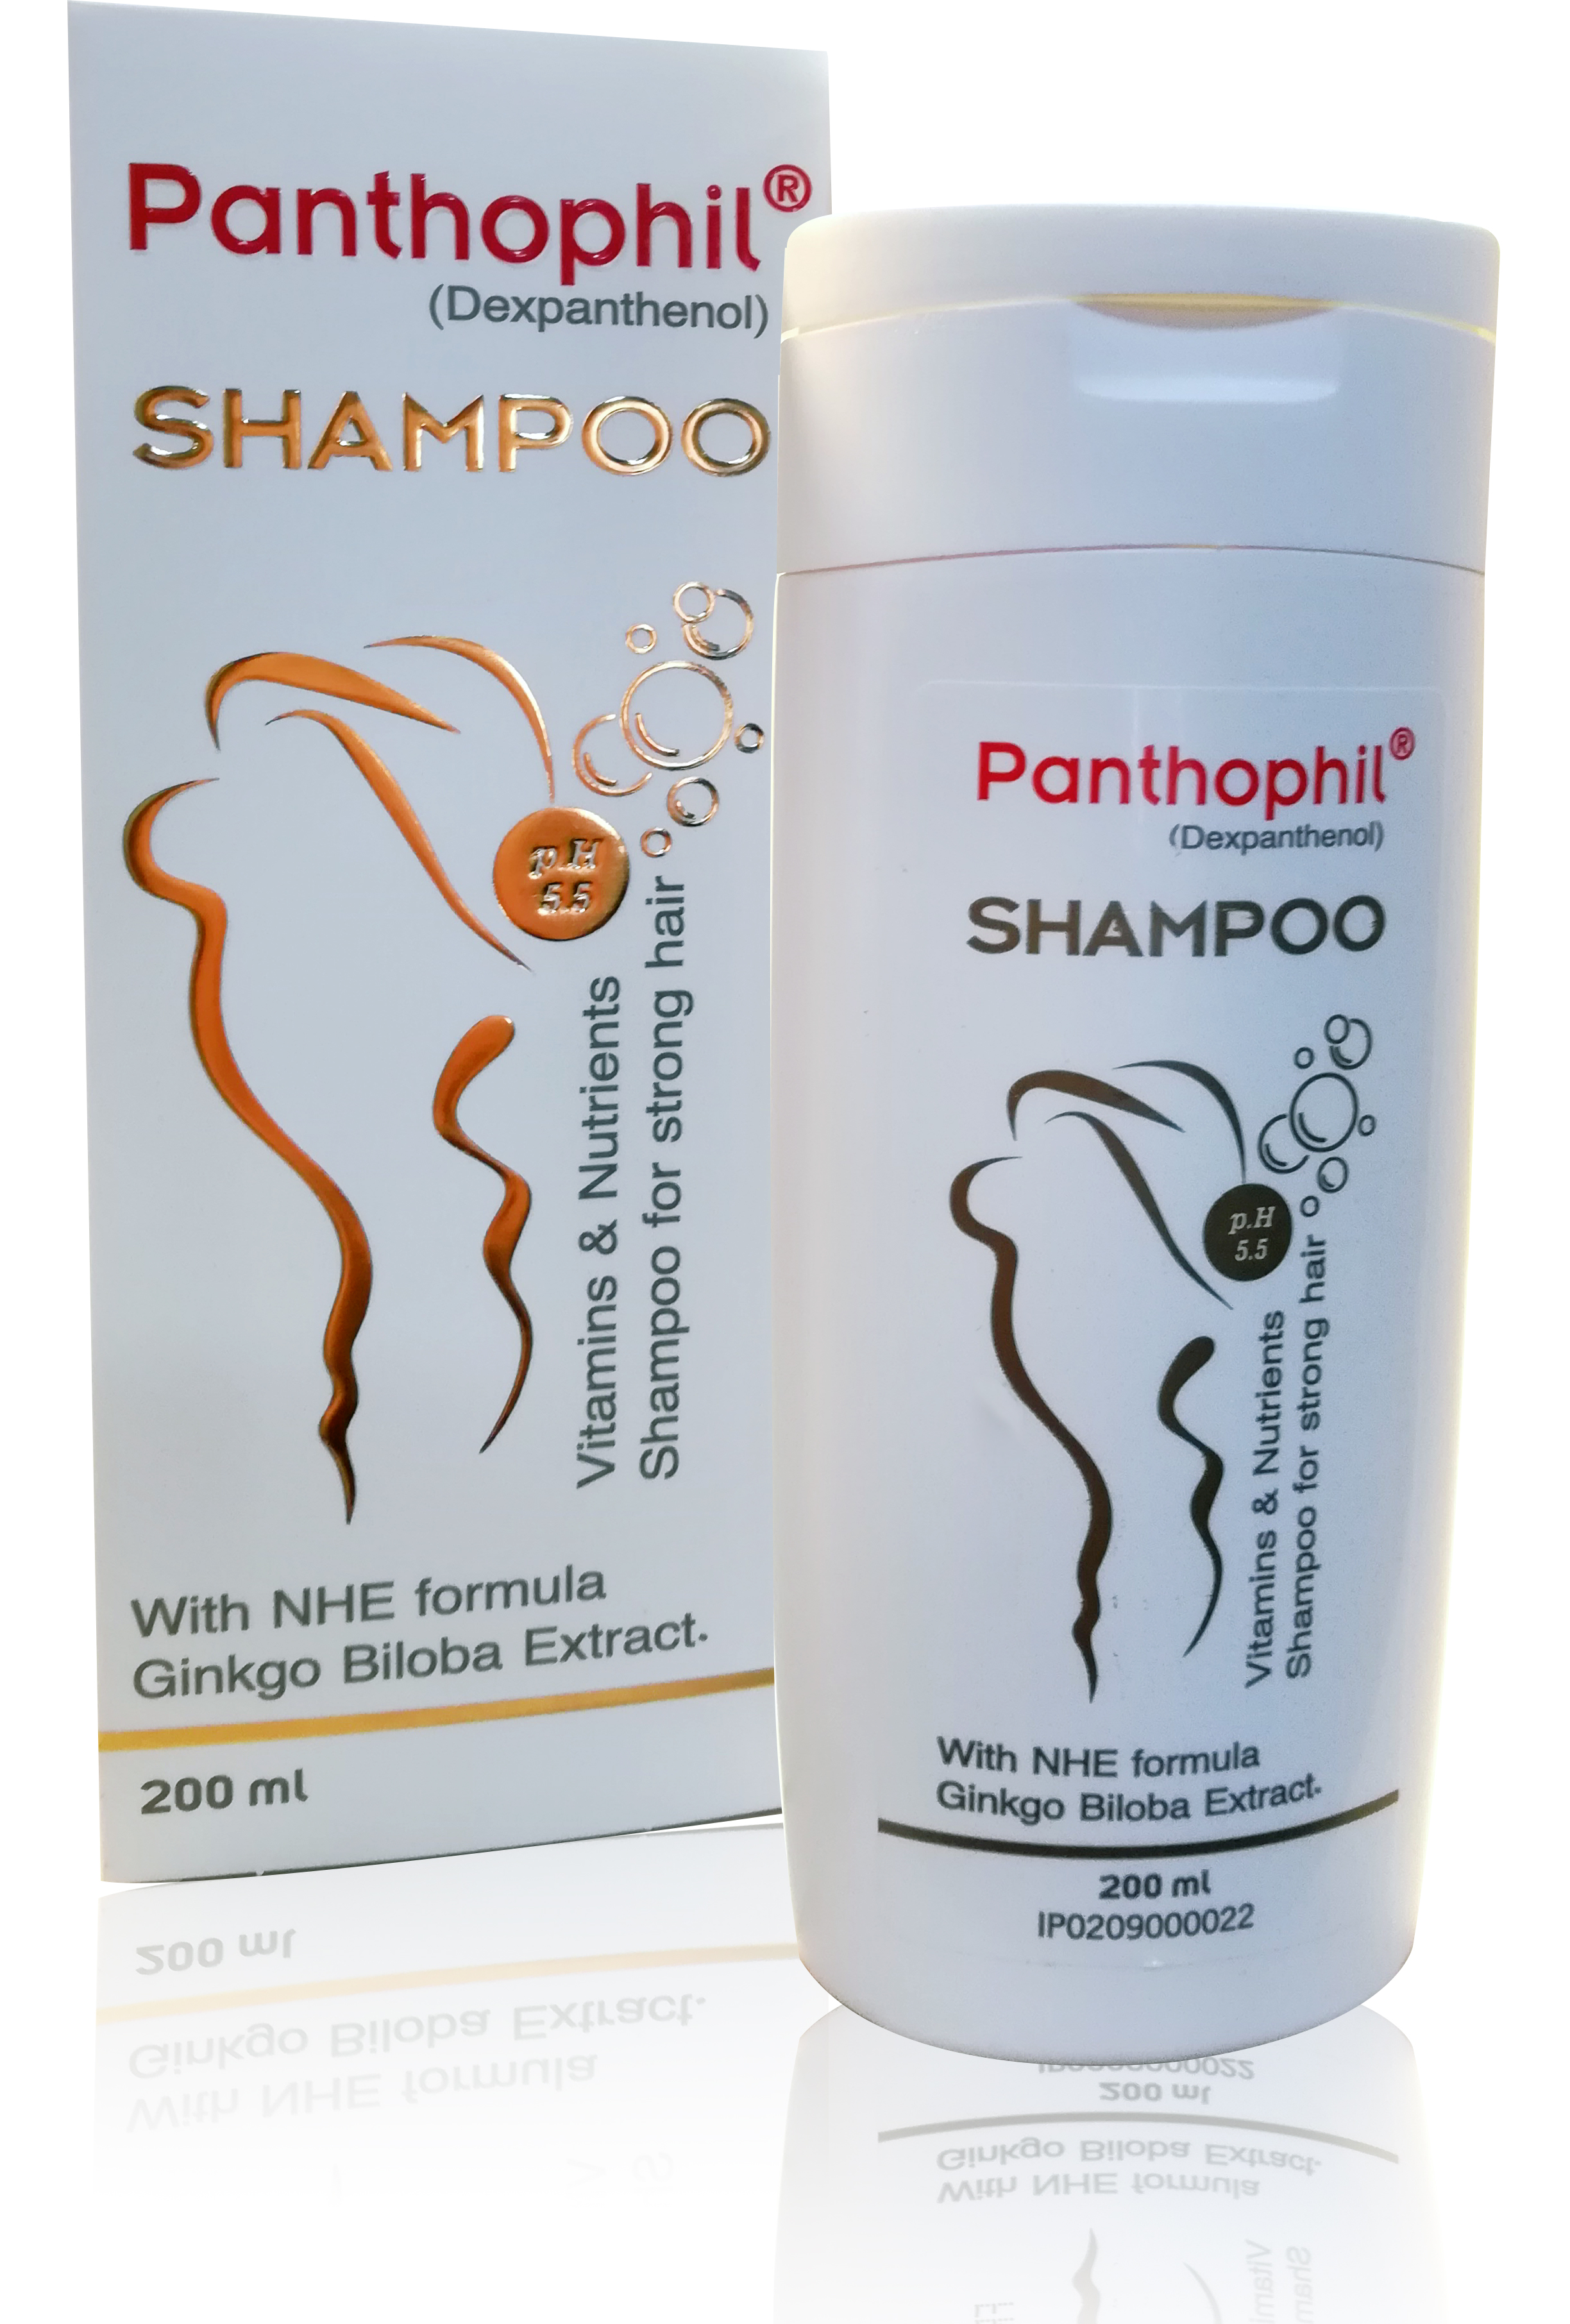 panthophil shampoo.jpg - 2.78 MB